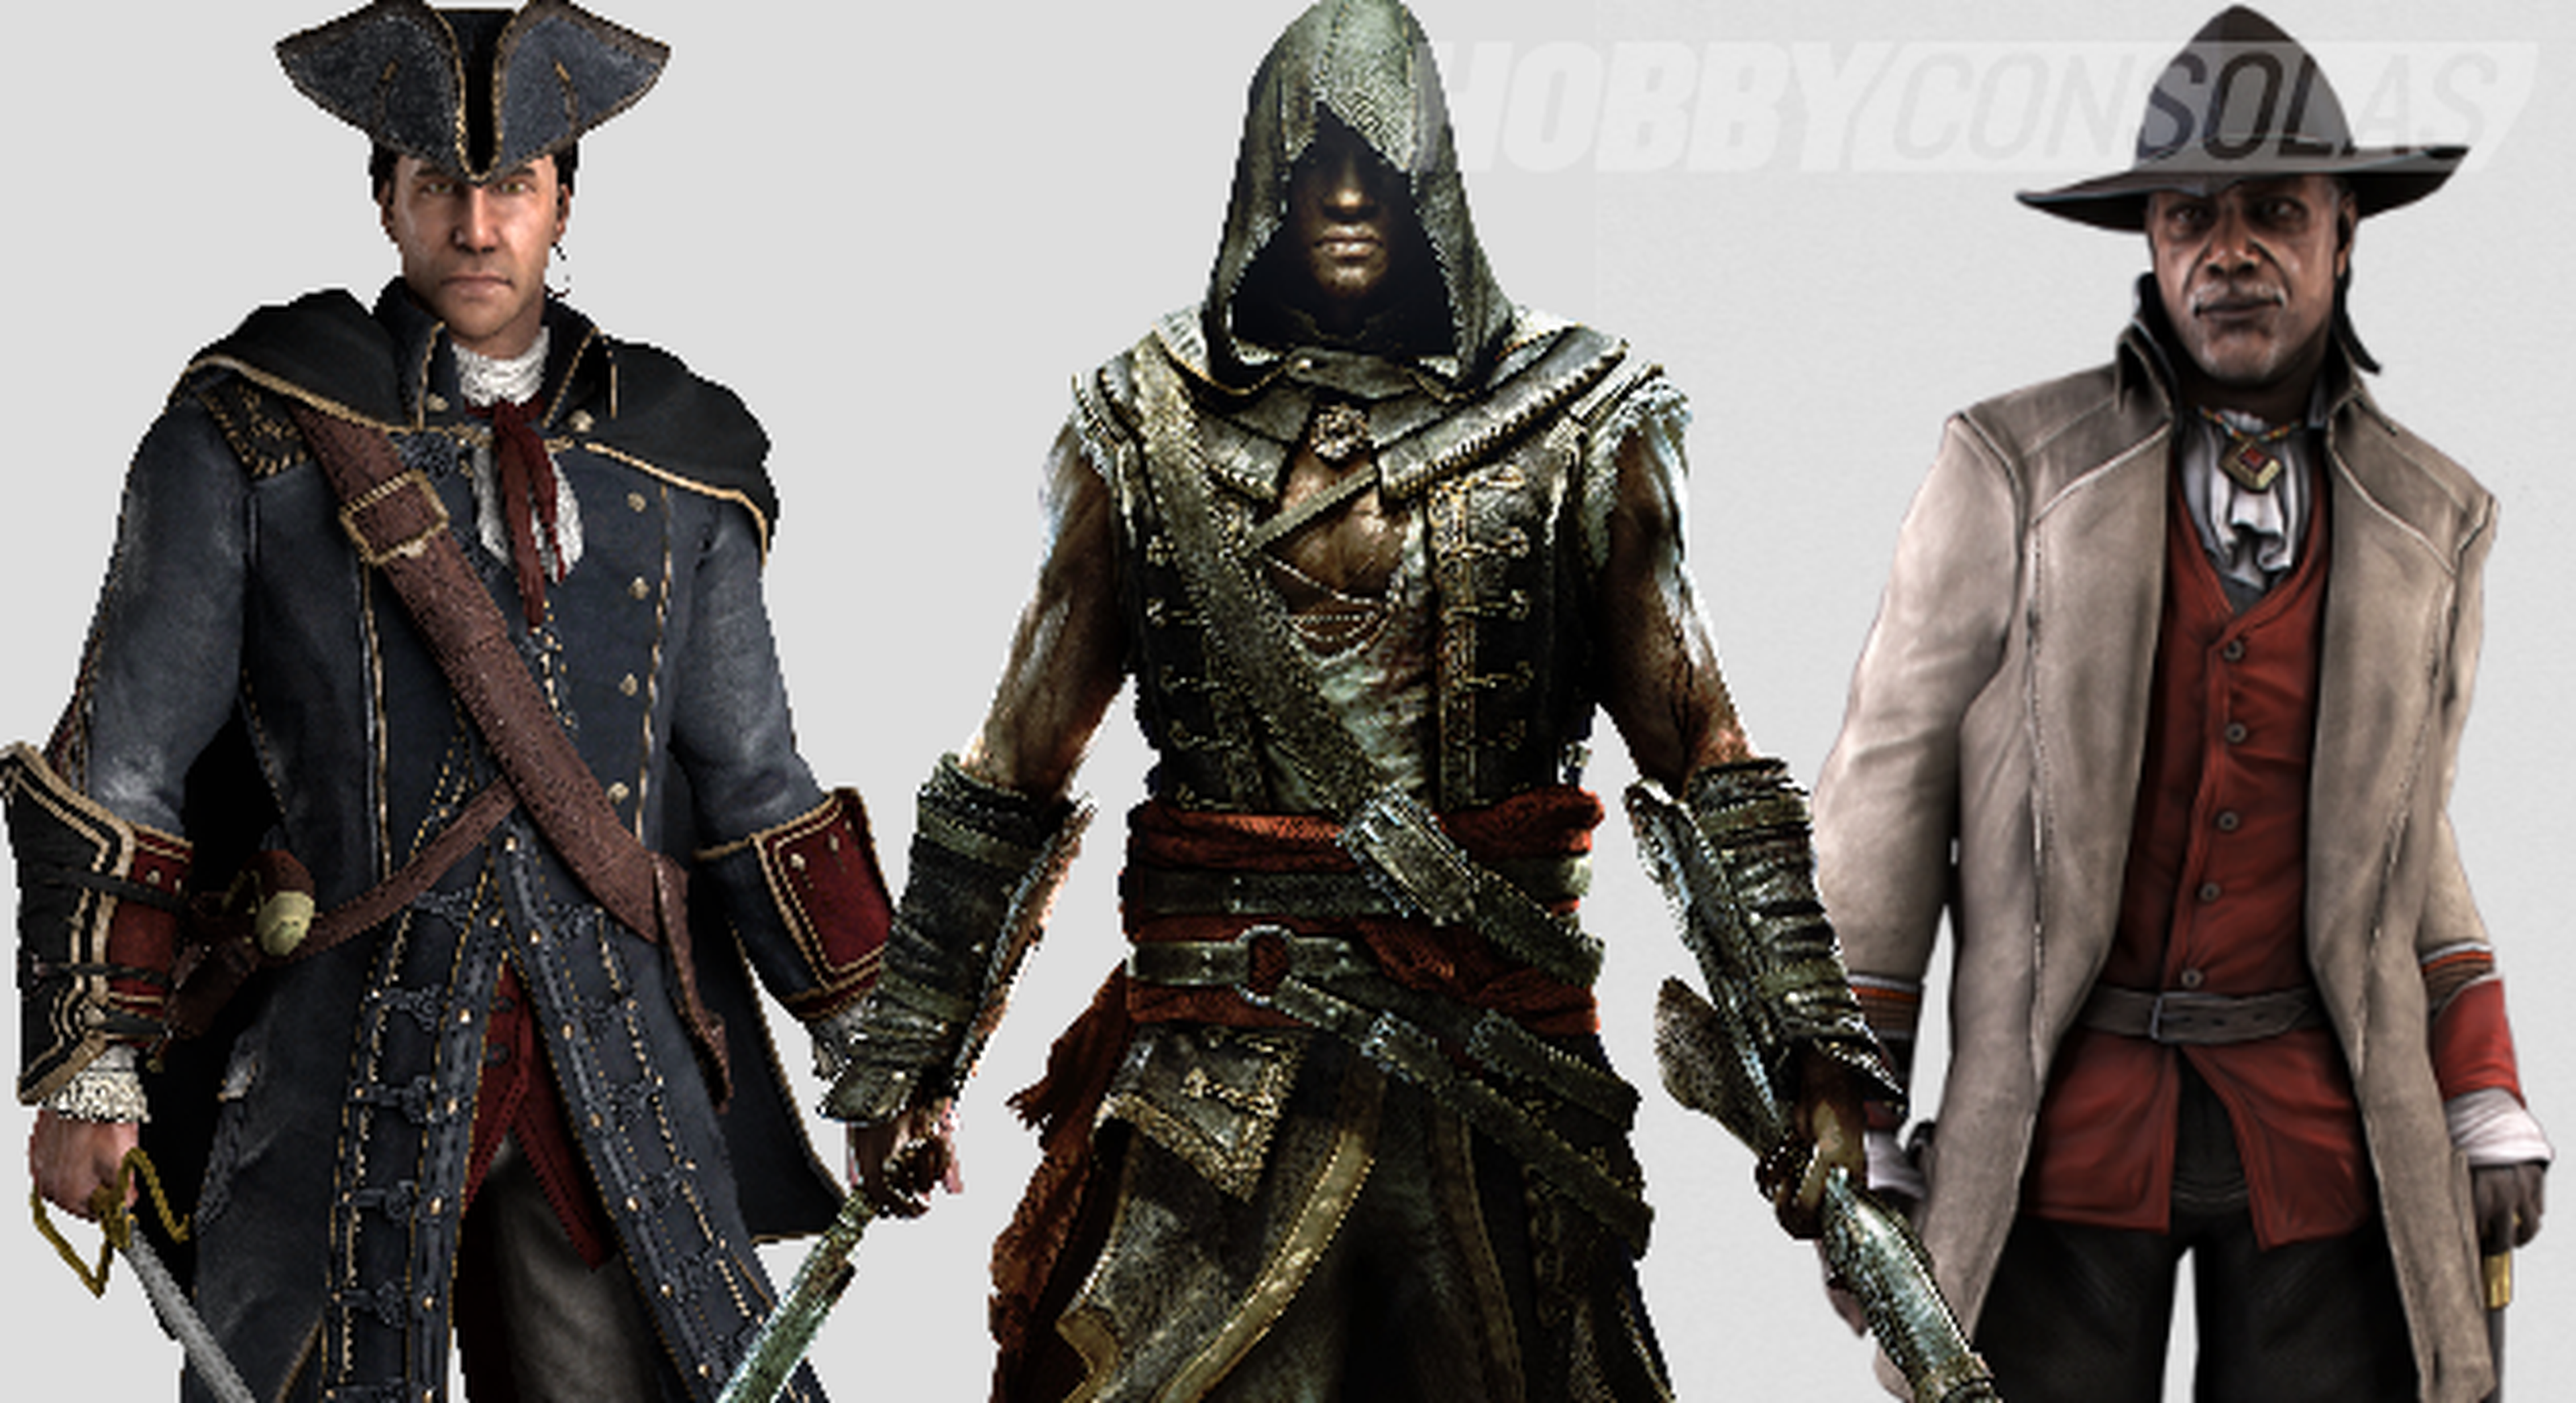 7 claves de Assassin's Creed Rogue